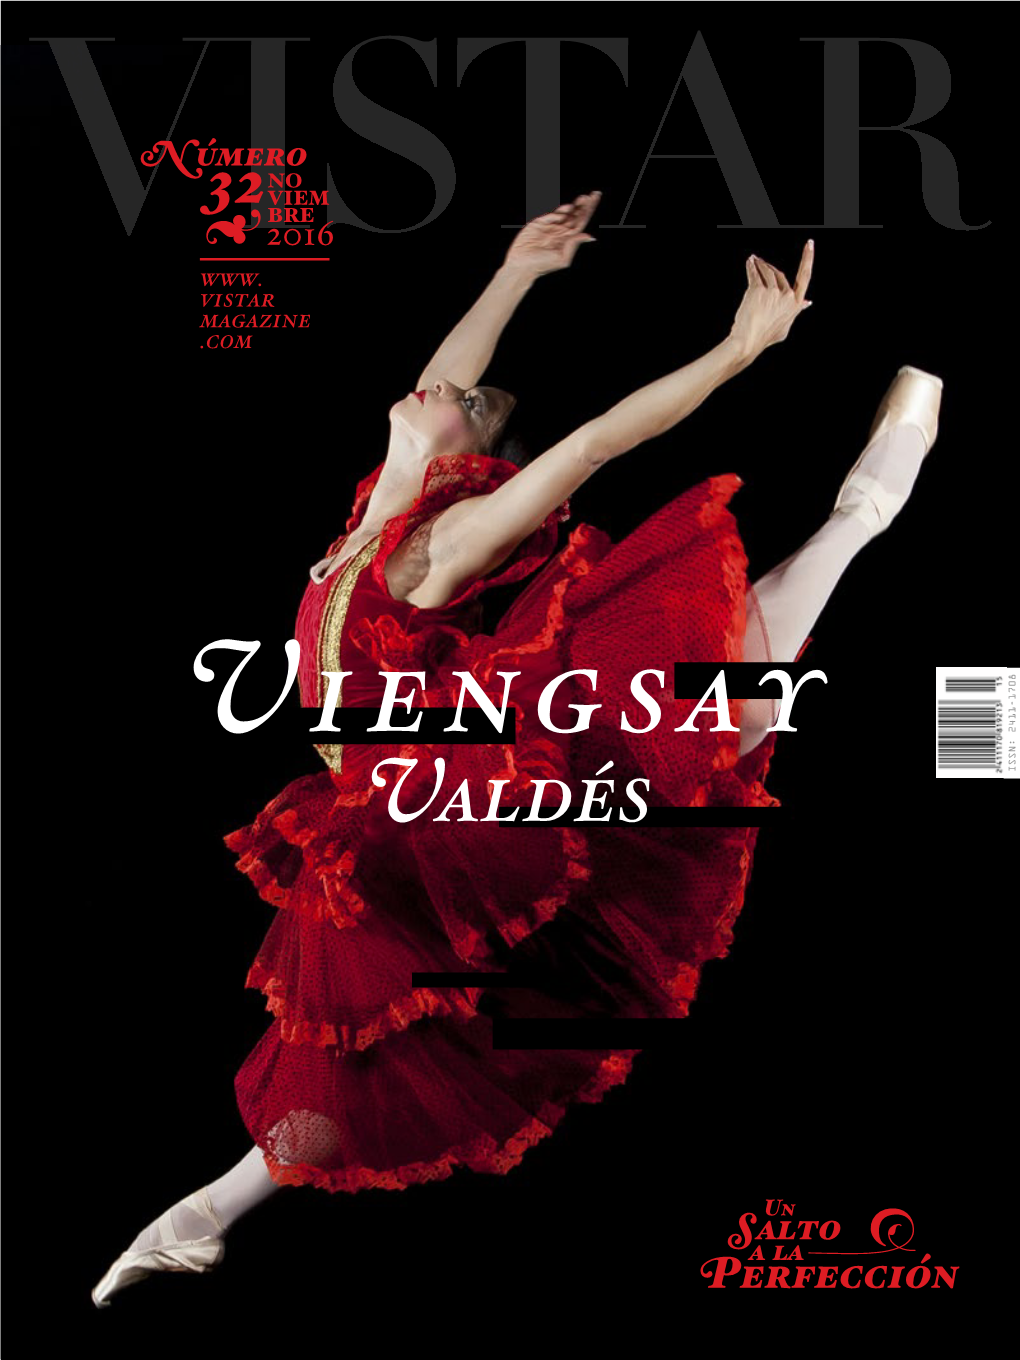 Vistar Magazine No.32